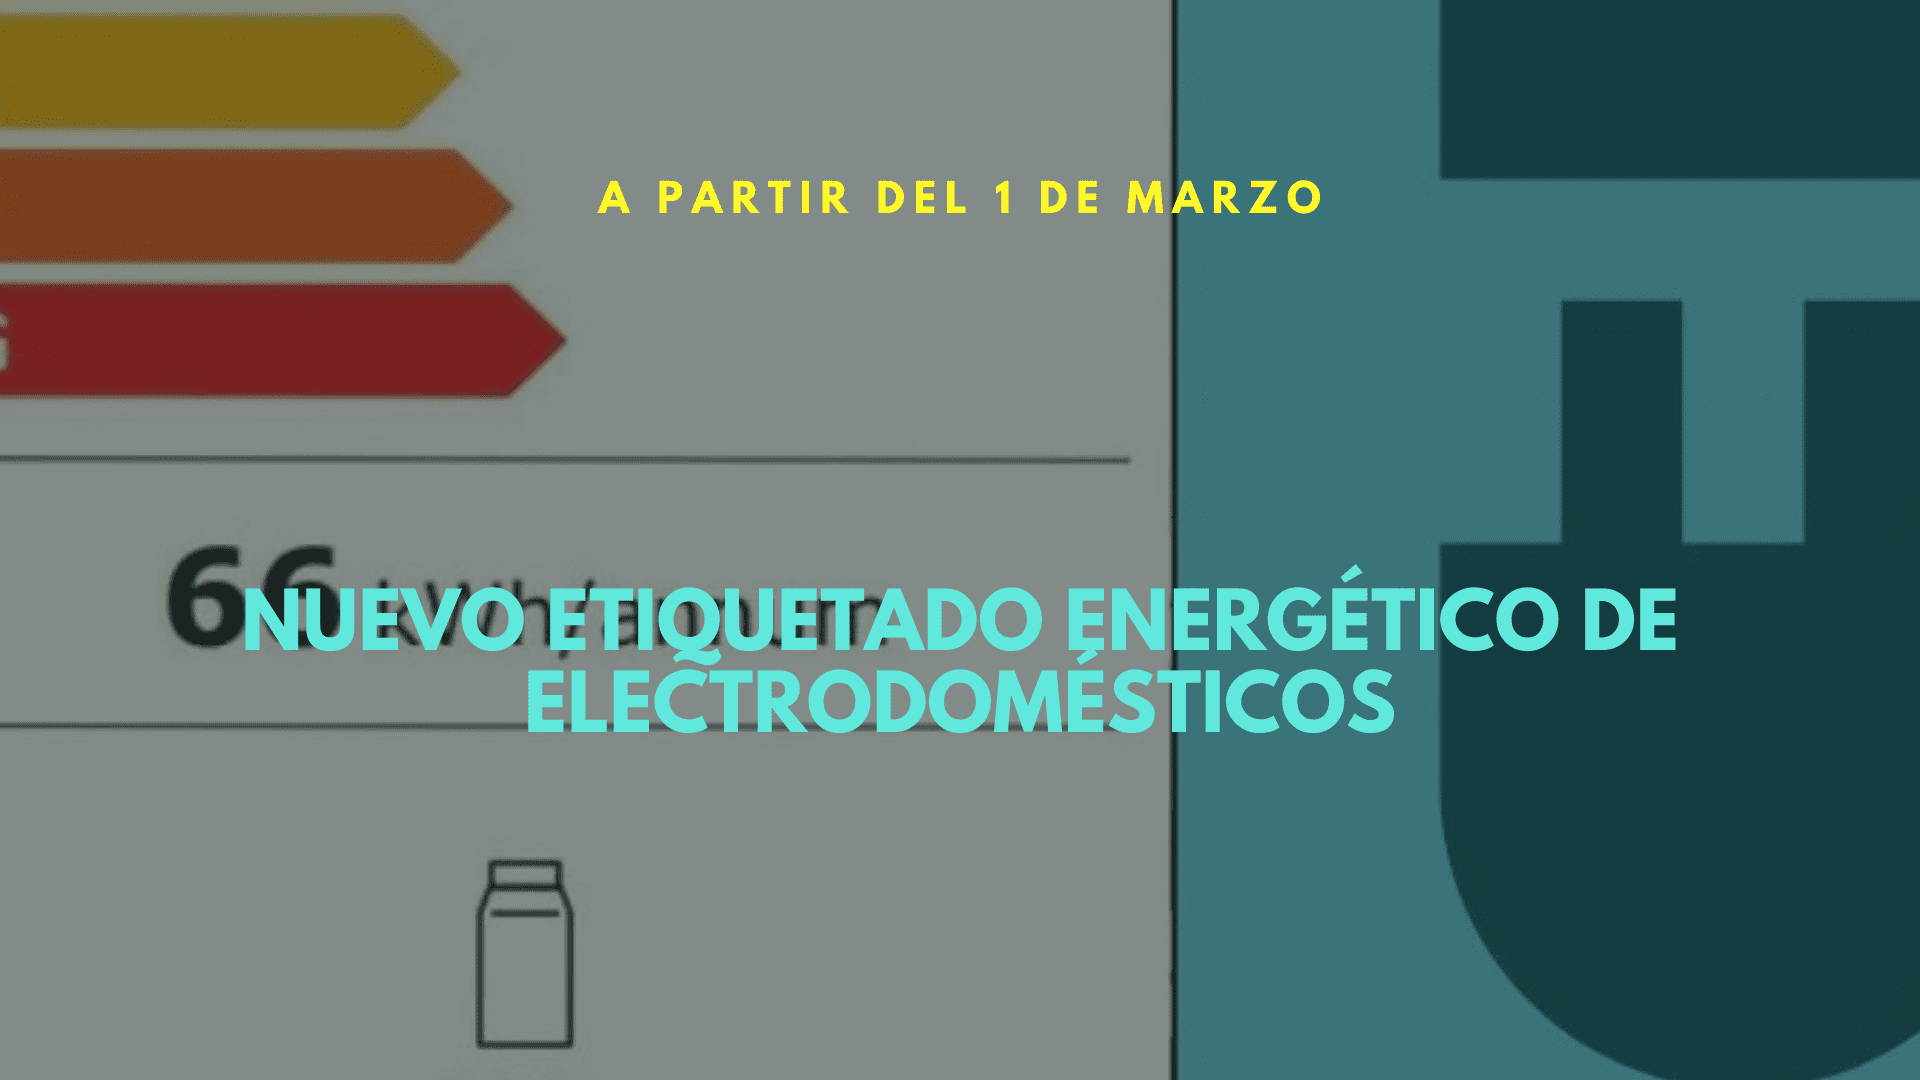 Nuevo etiquetado energético de electrodomésticos en vigor desde el 1 de marzo